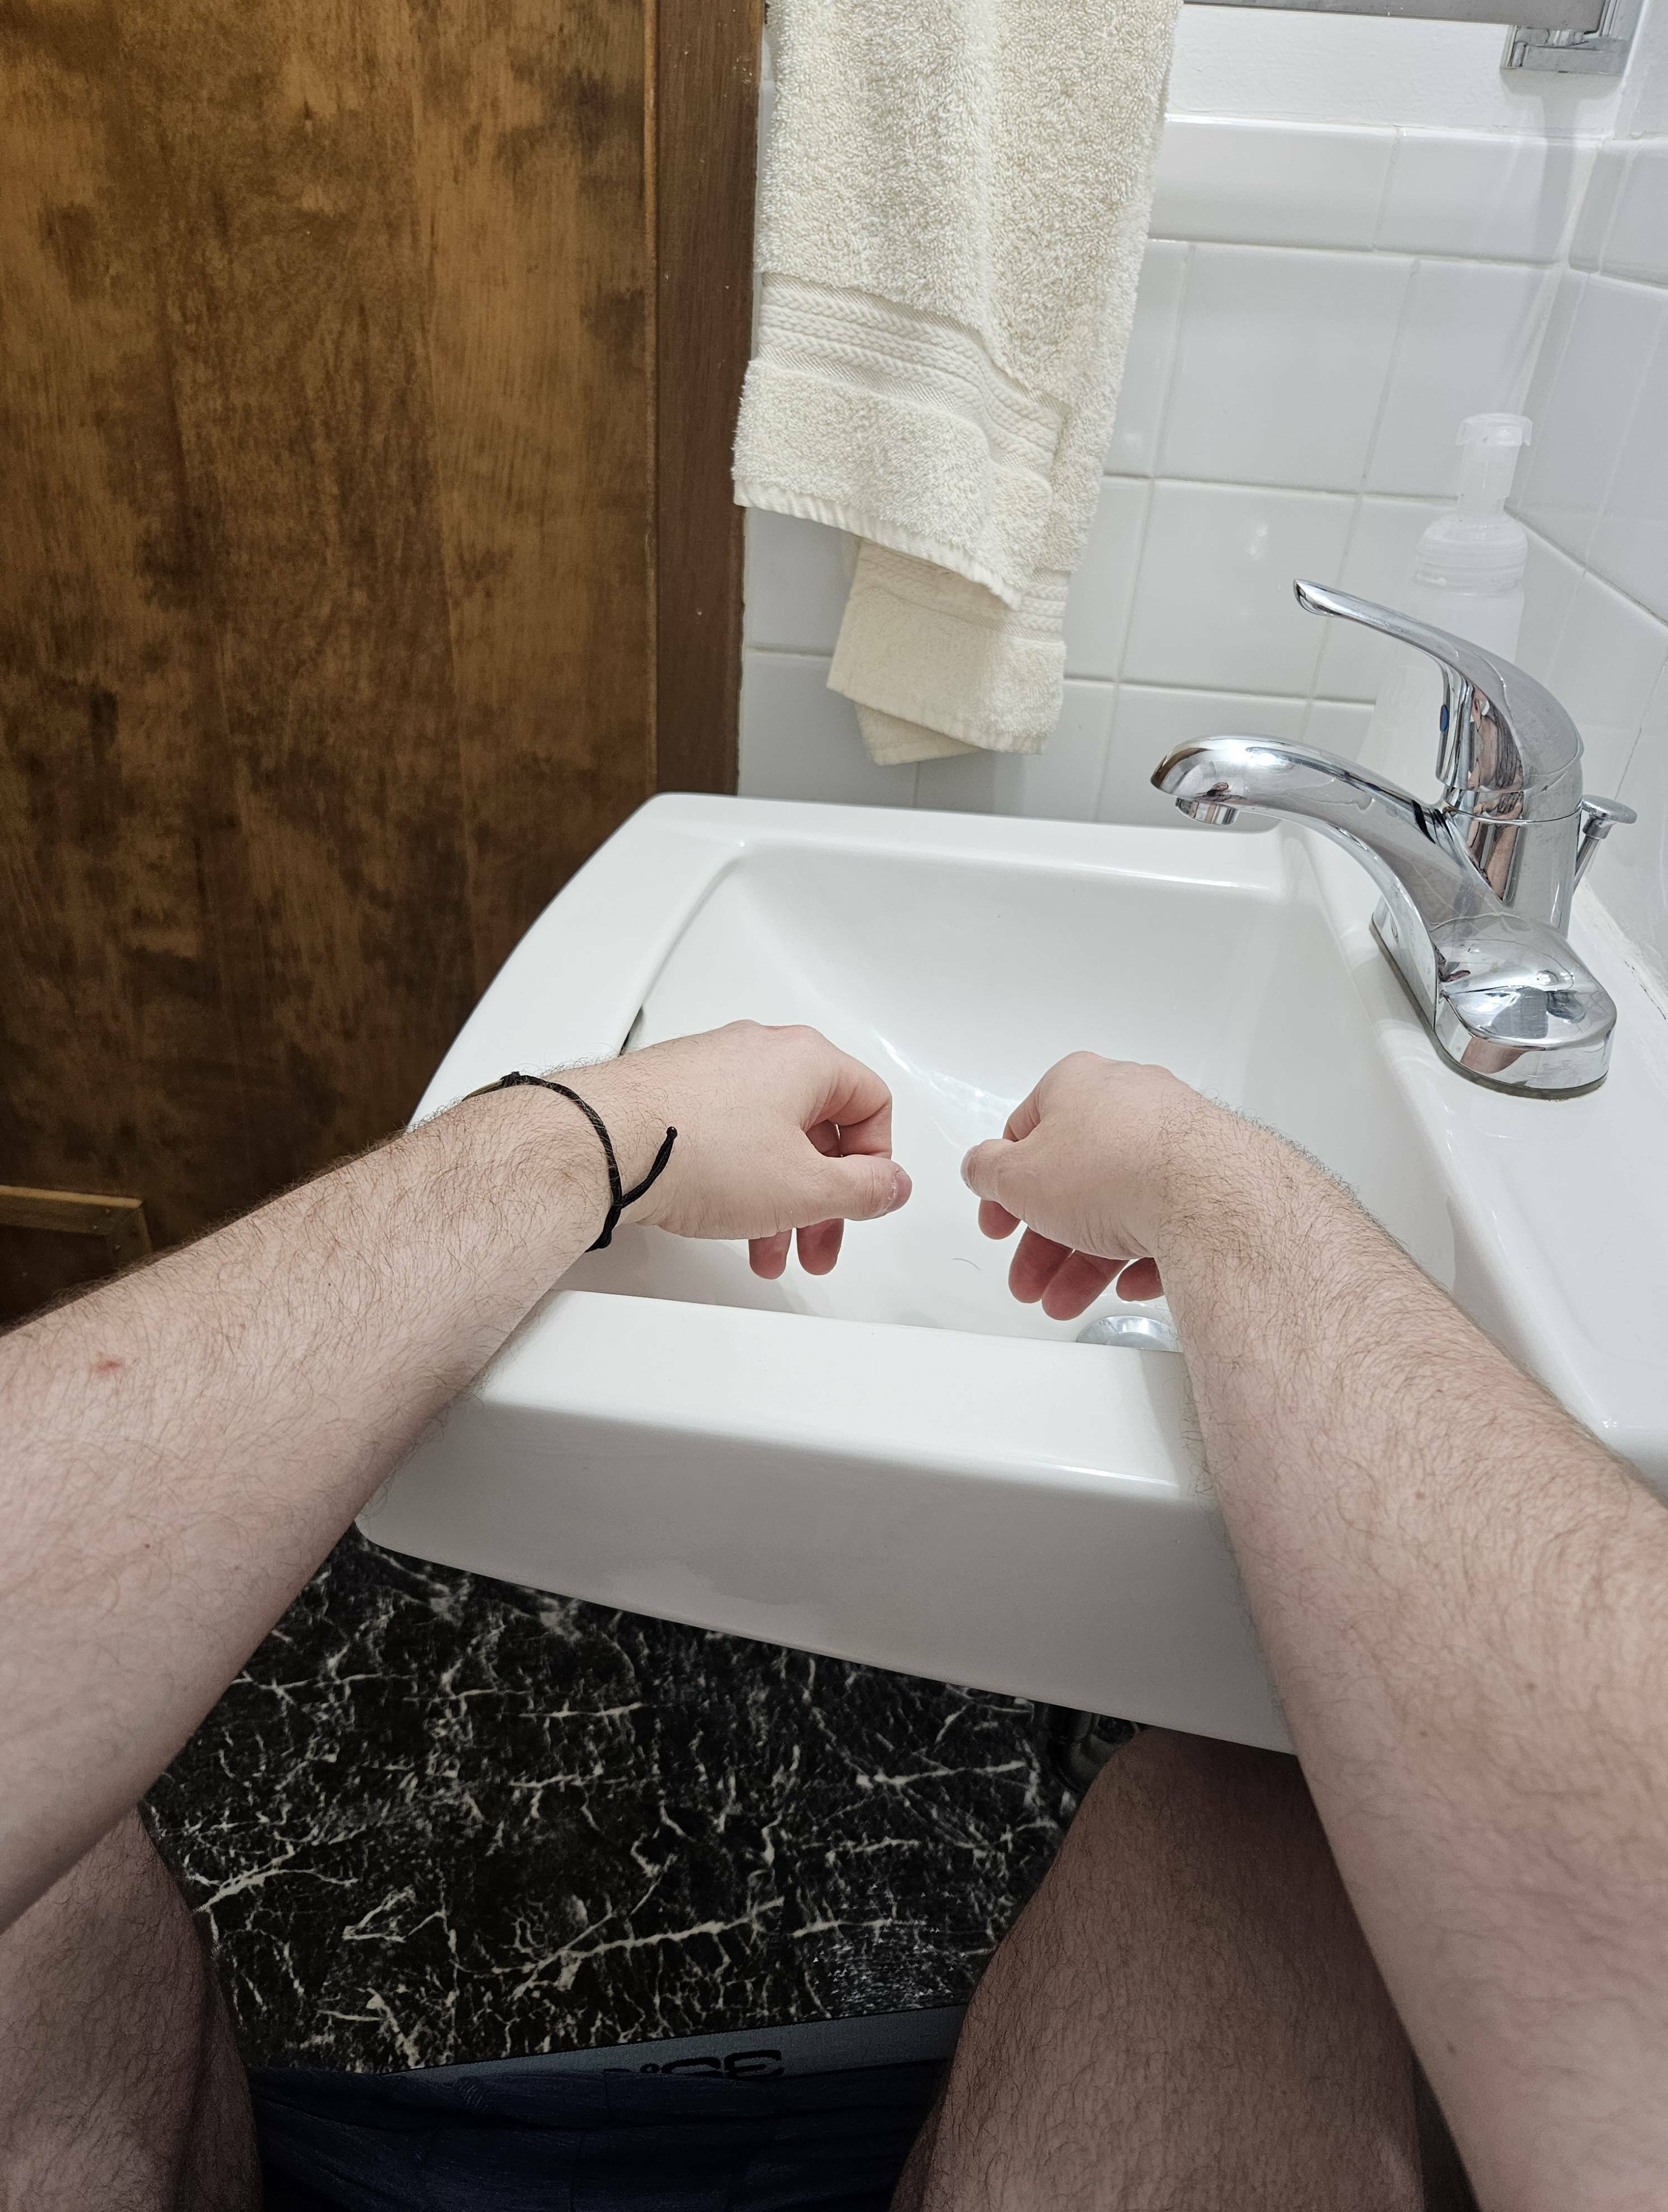 Dans l'Airbnb où je suis, les toilettes sont si proches de l'évier que je peux me laver les mains et faire caca en même temps.